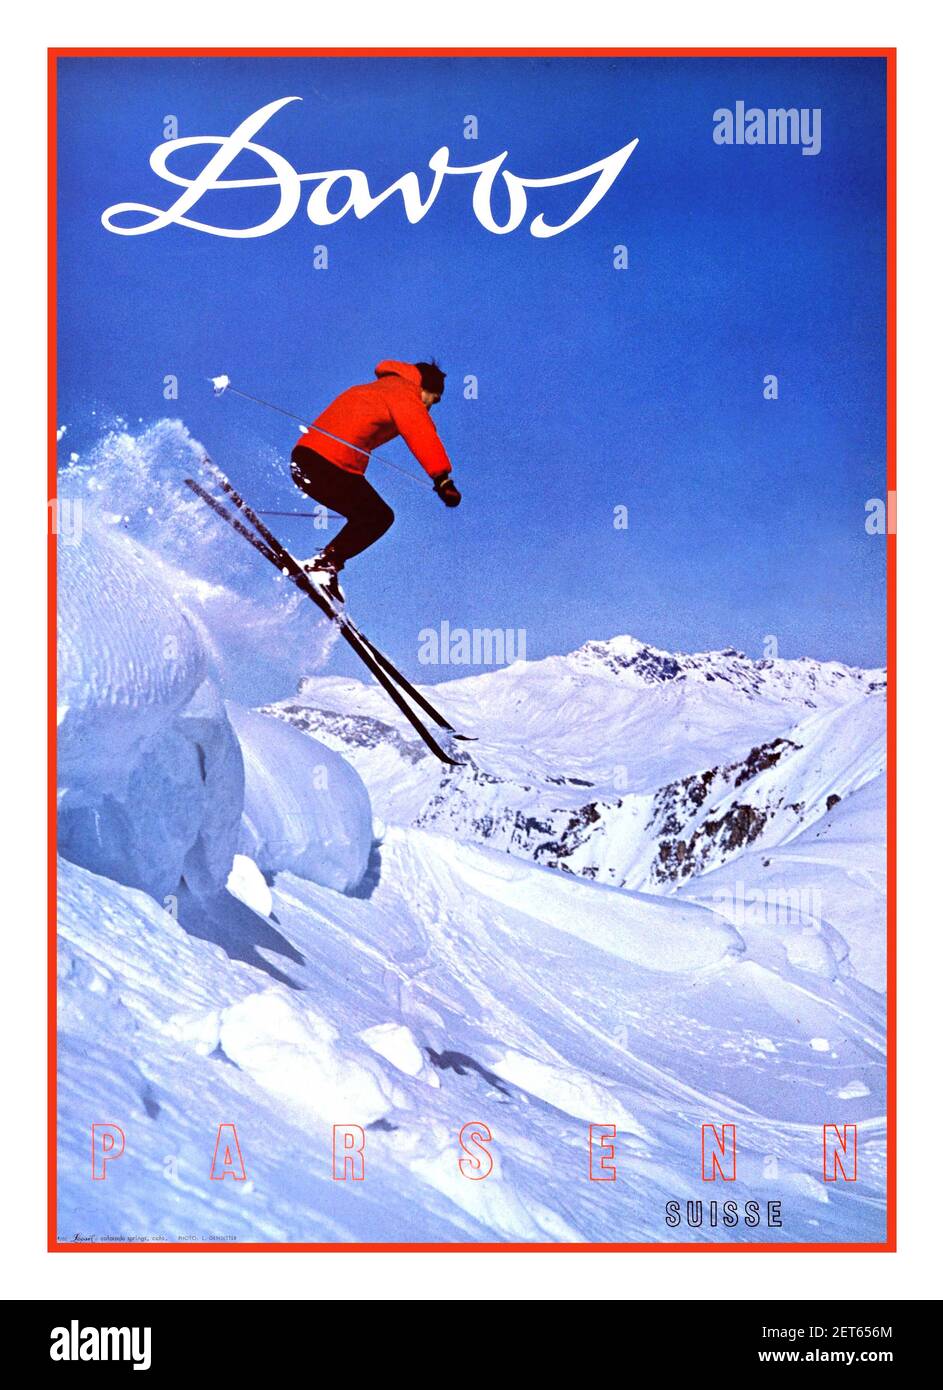 DAVOS SKI SKI SKI VINTAGE 1960 Ski Poster für Davos in Parsenn, Schweiz mit Illustration eines Skifahrers, der von einer Piste in knackig weißen Schnee springt. Davos ist ein Skiort in den Schweizer Alpen, im Kanton Graubünden. USA, Designer: L. Gensetter, 1960s Stockfoto